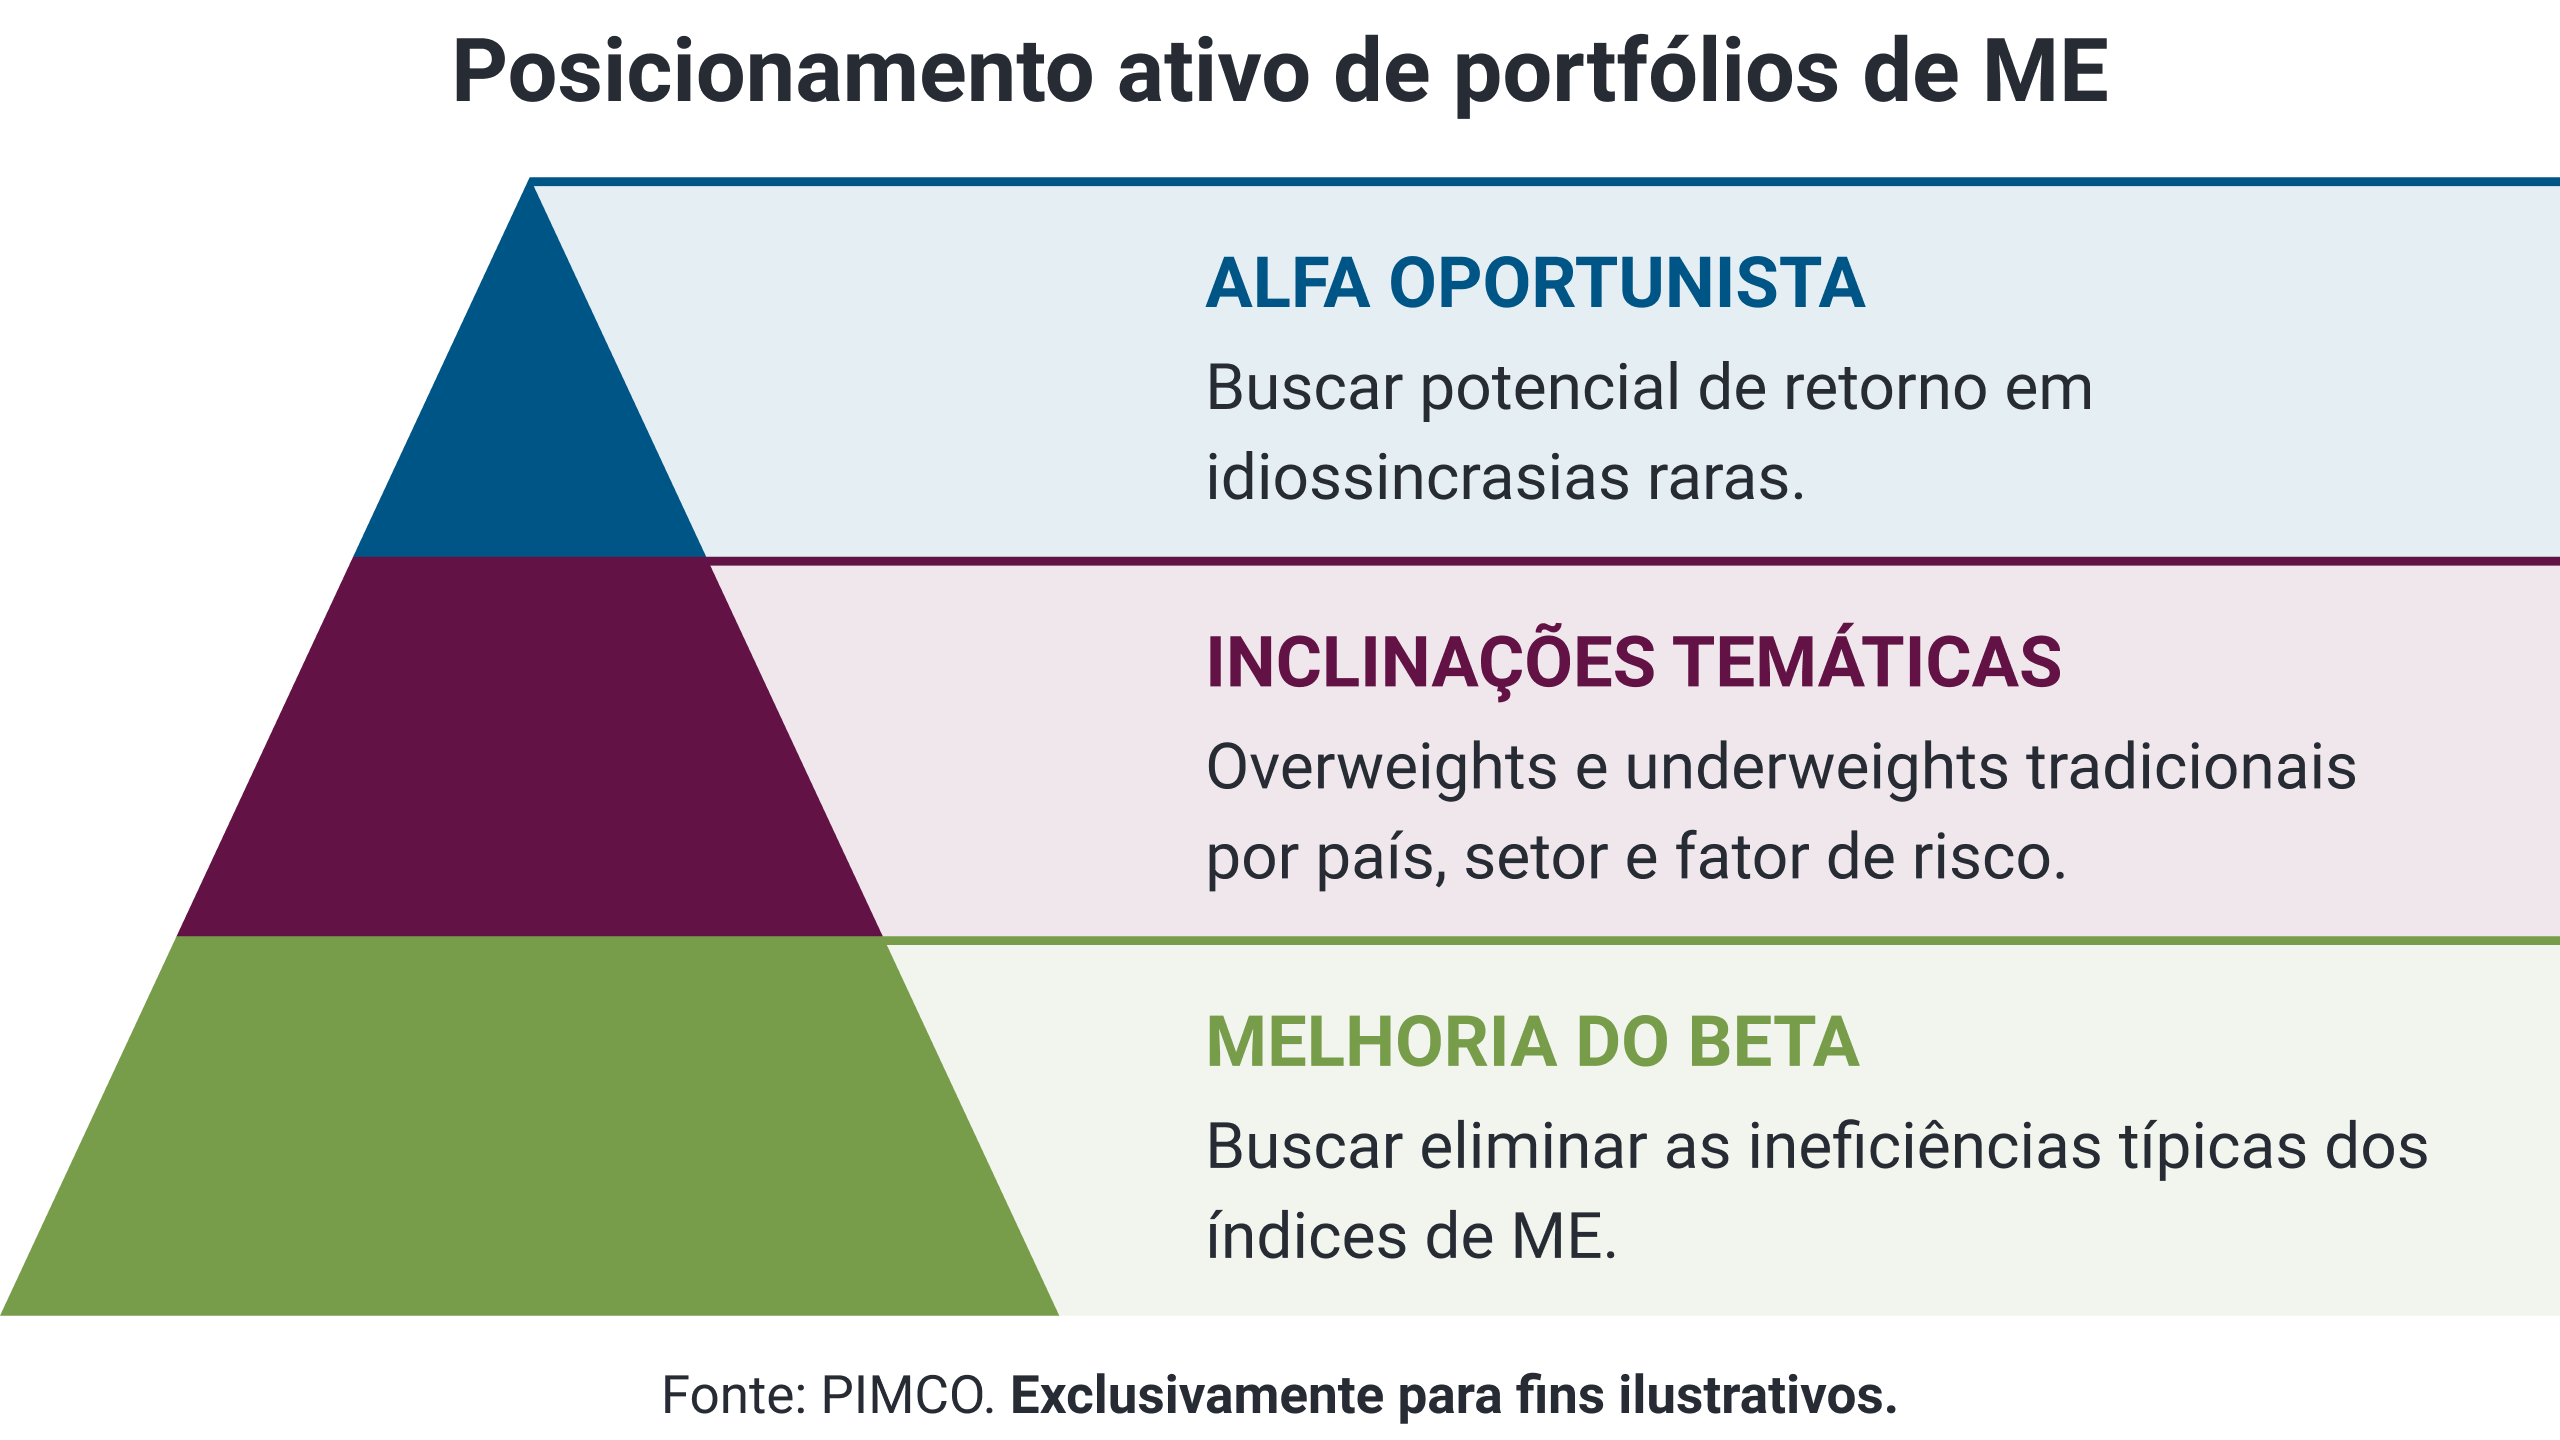 Active positioning for EM portfolios